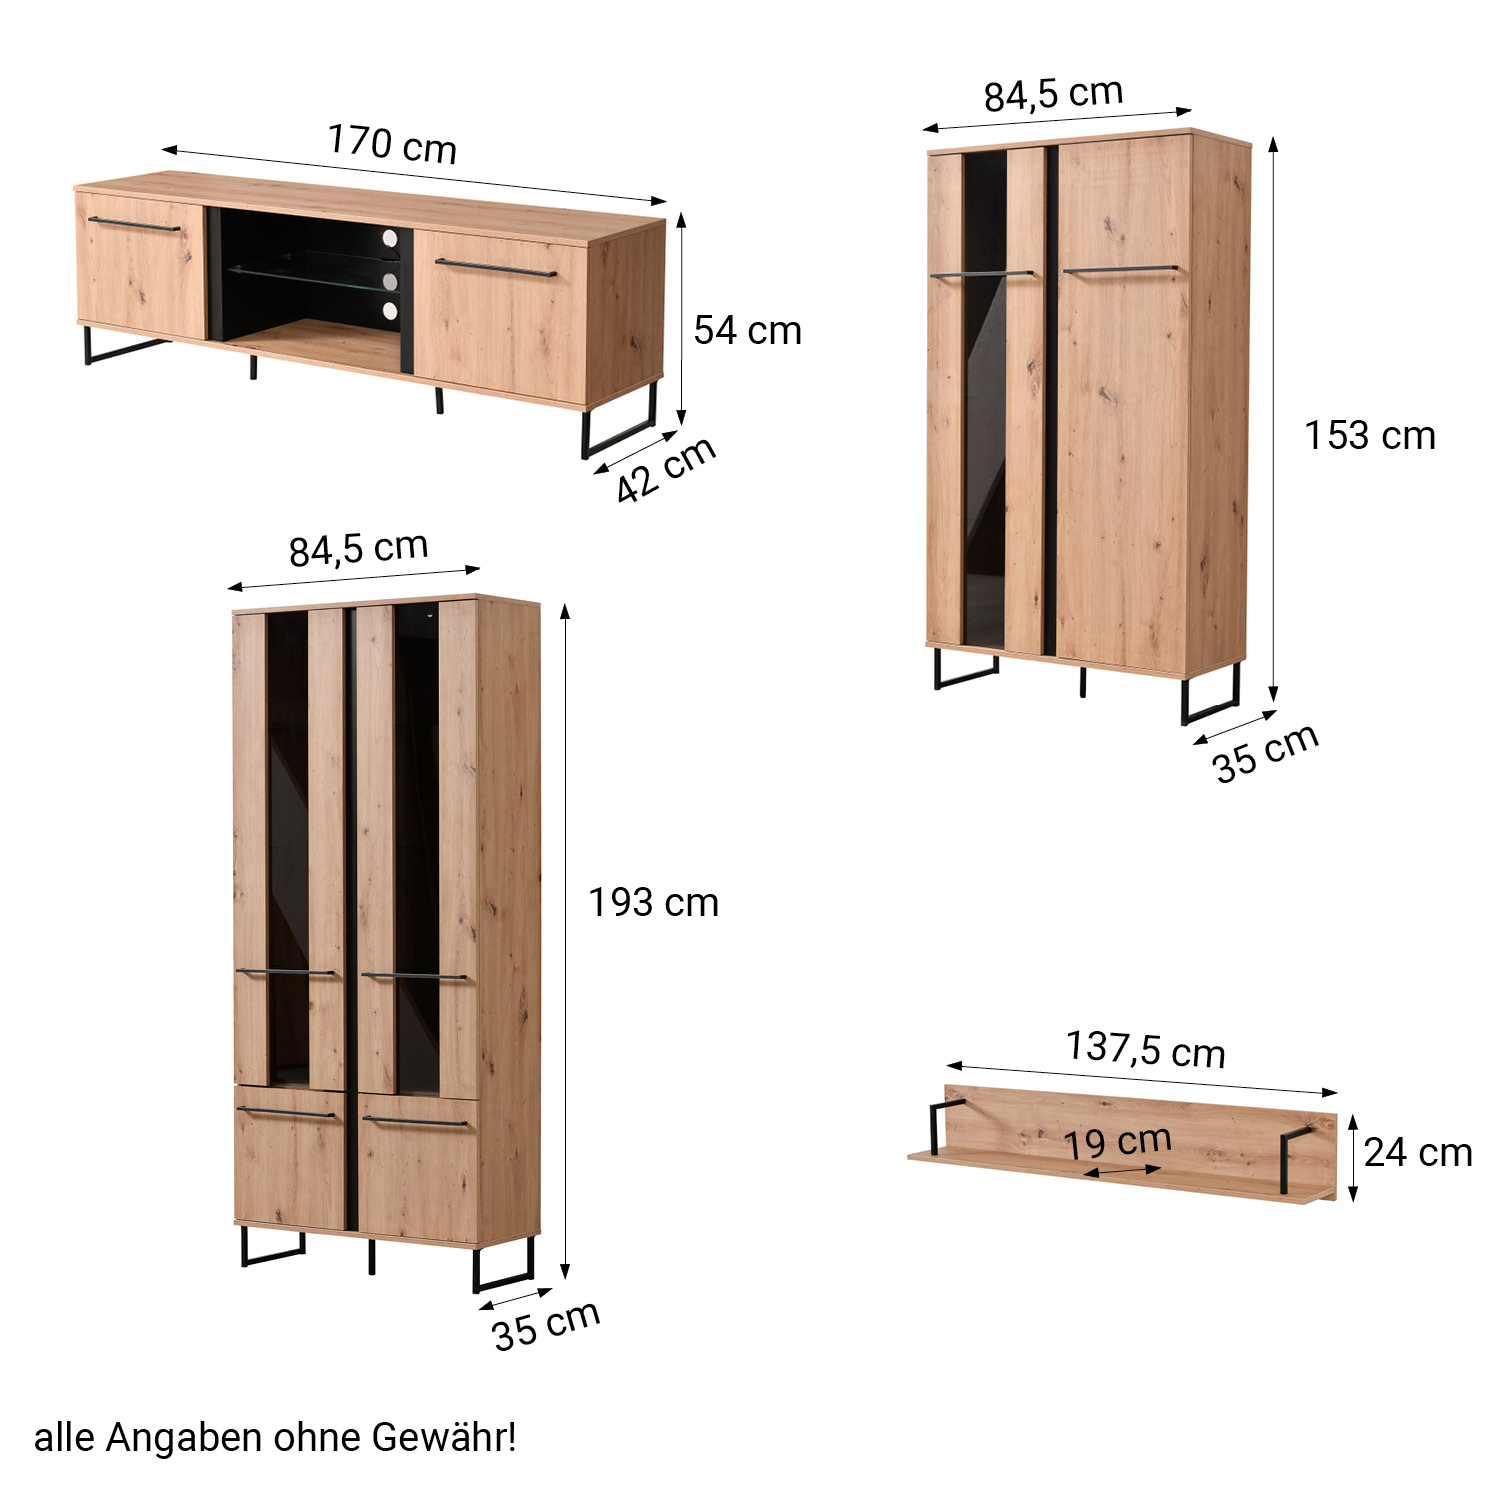 Wohnwand Schrankwand Anbauwand Wohnzimmer-Set Modern Eiche Holz Industrial Style